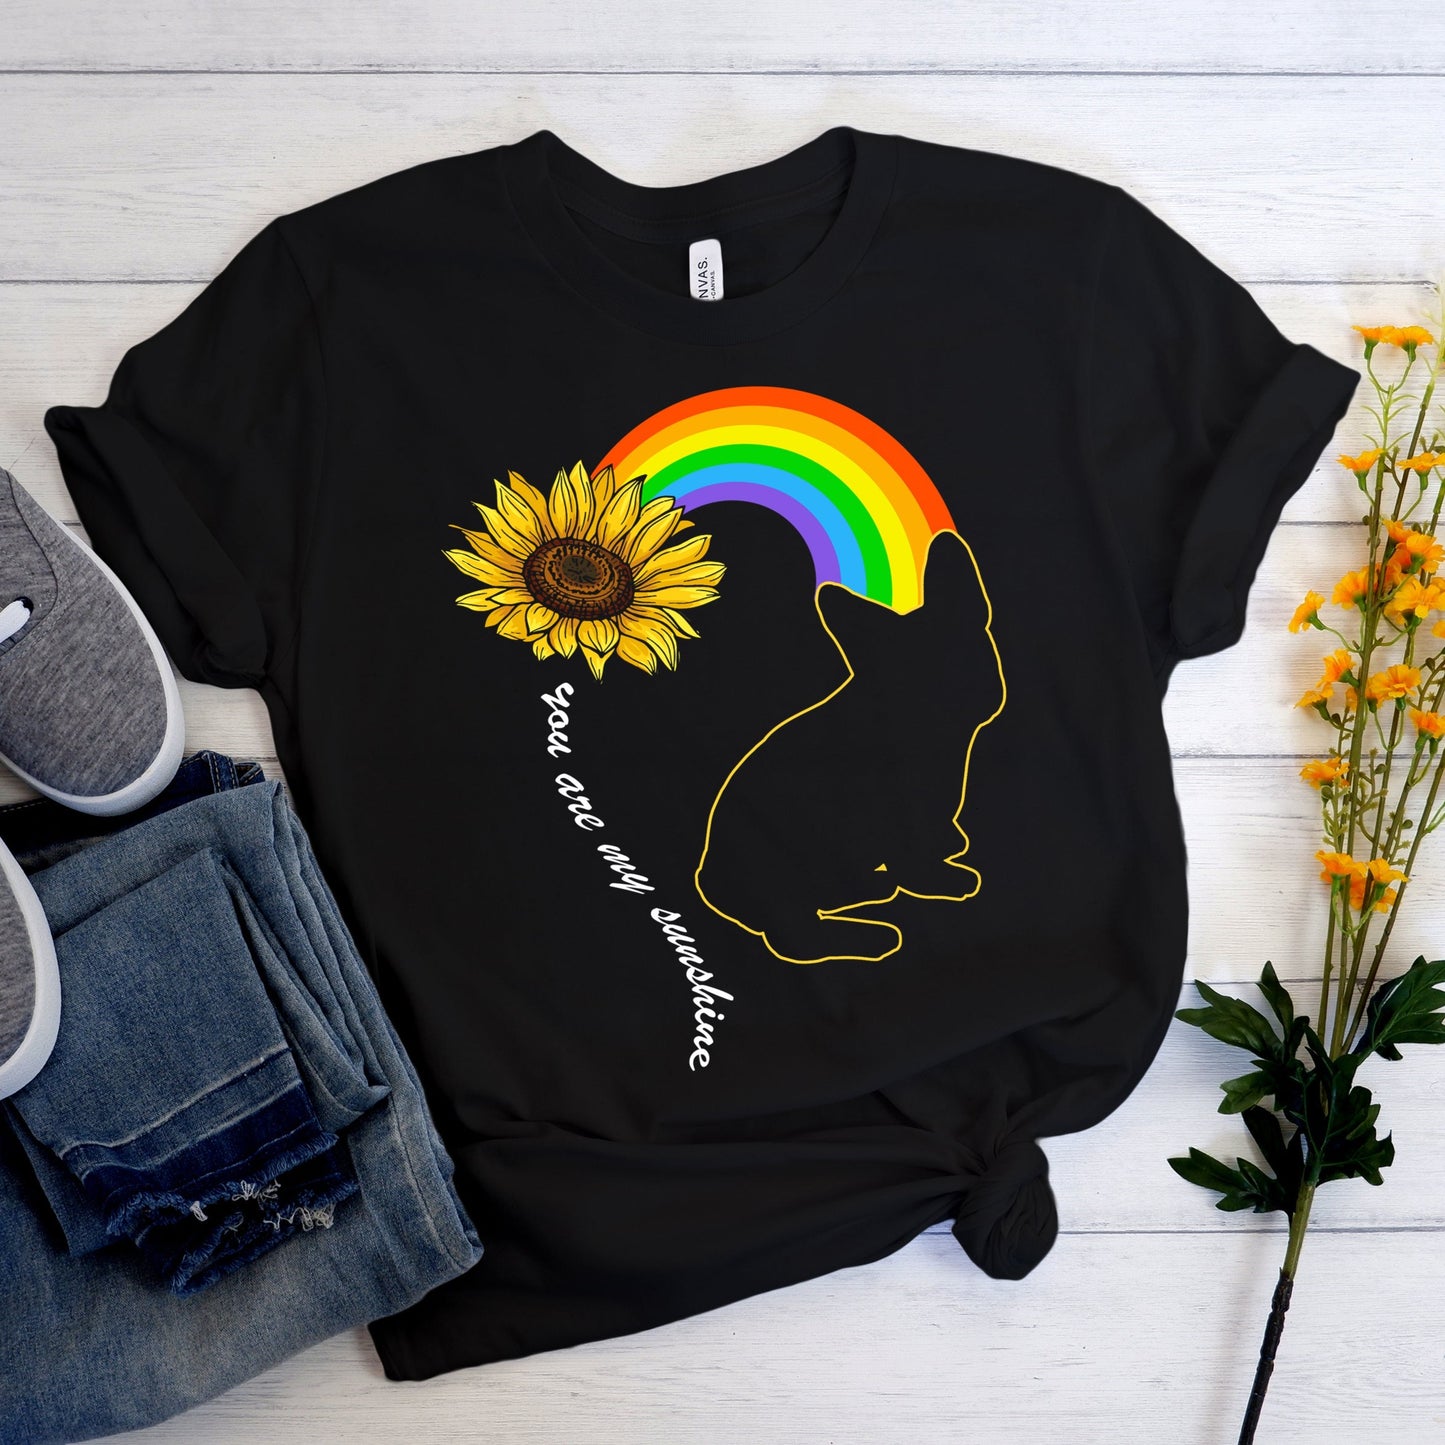 Rainbow Frenchie - Unisex T-Shirt - Frenchie Bulldog Shop